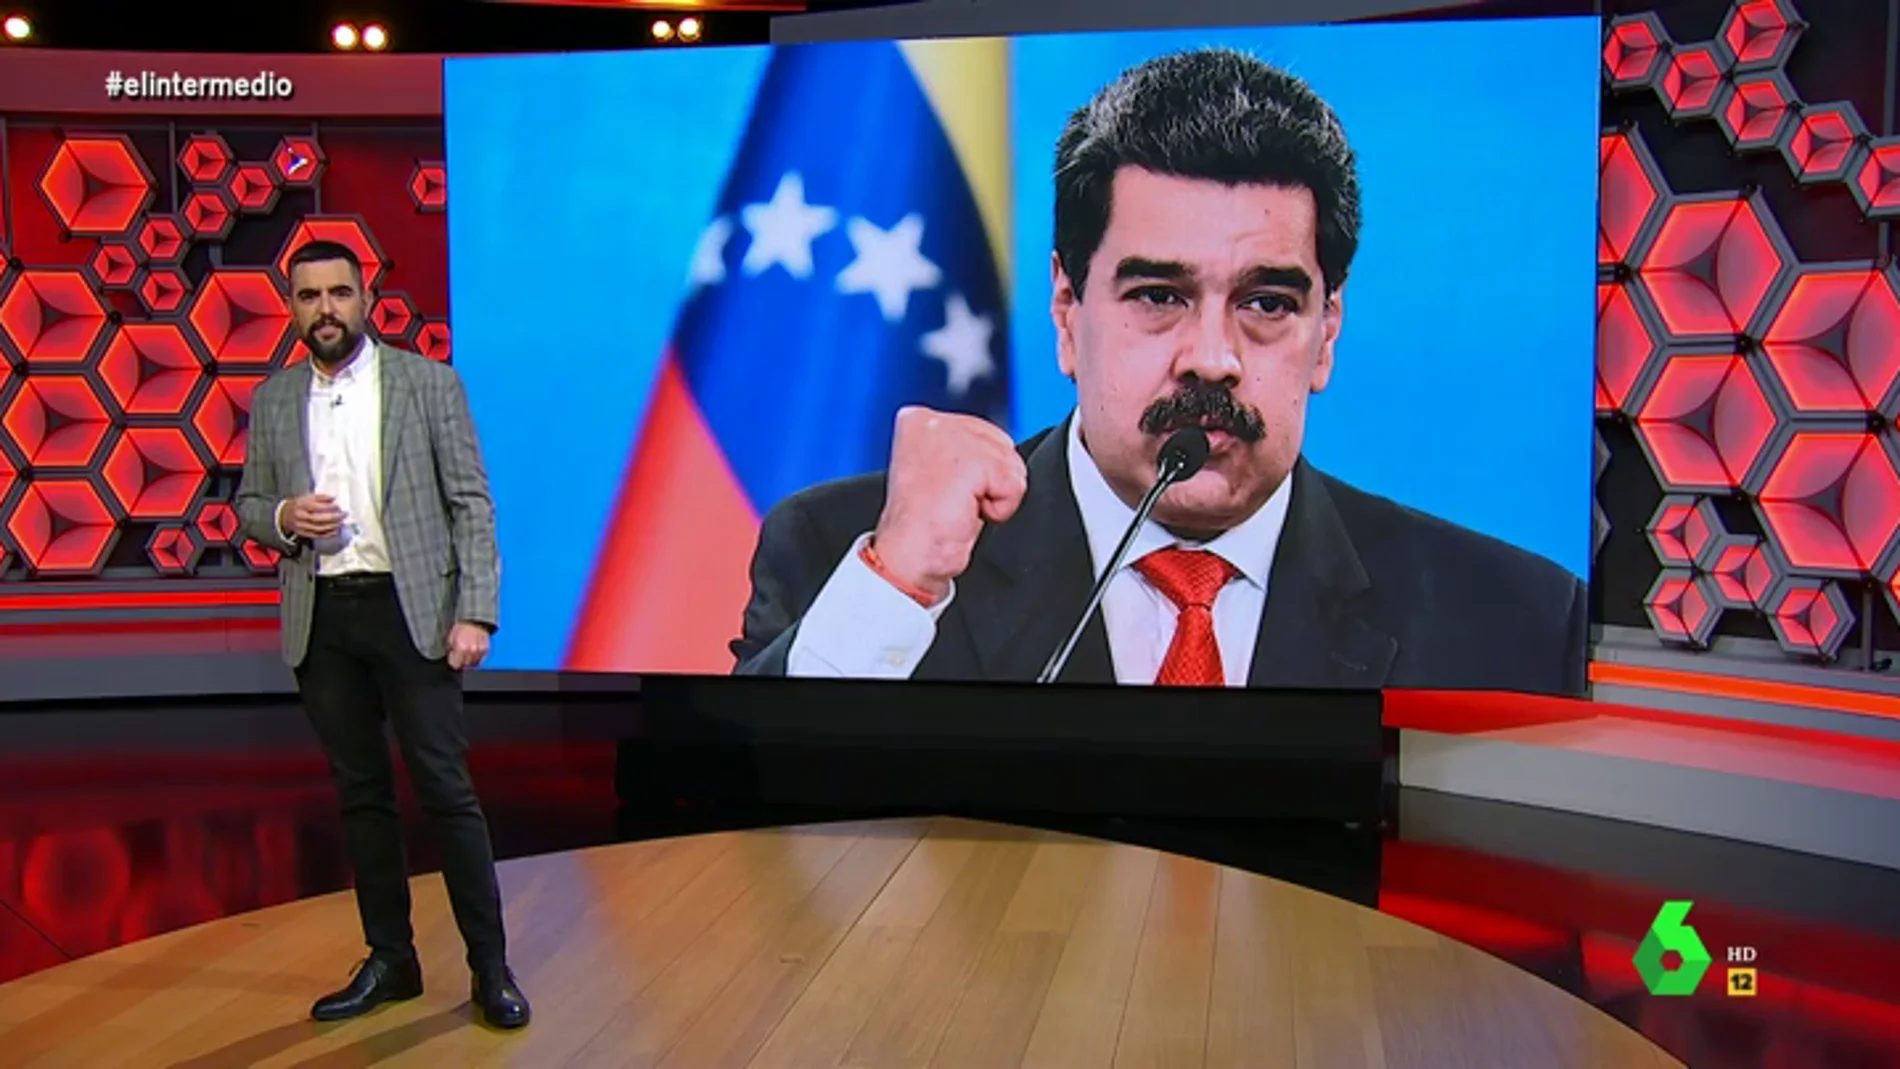 Nicolás Maduro sufre un "insólito" efecto secundario de la vacuna rusa: "Ha conseguido la inmunidad y el B2 de ruso"